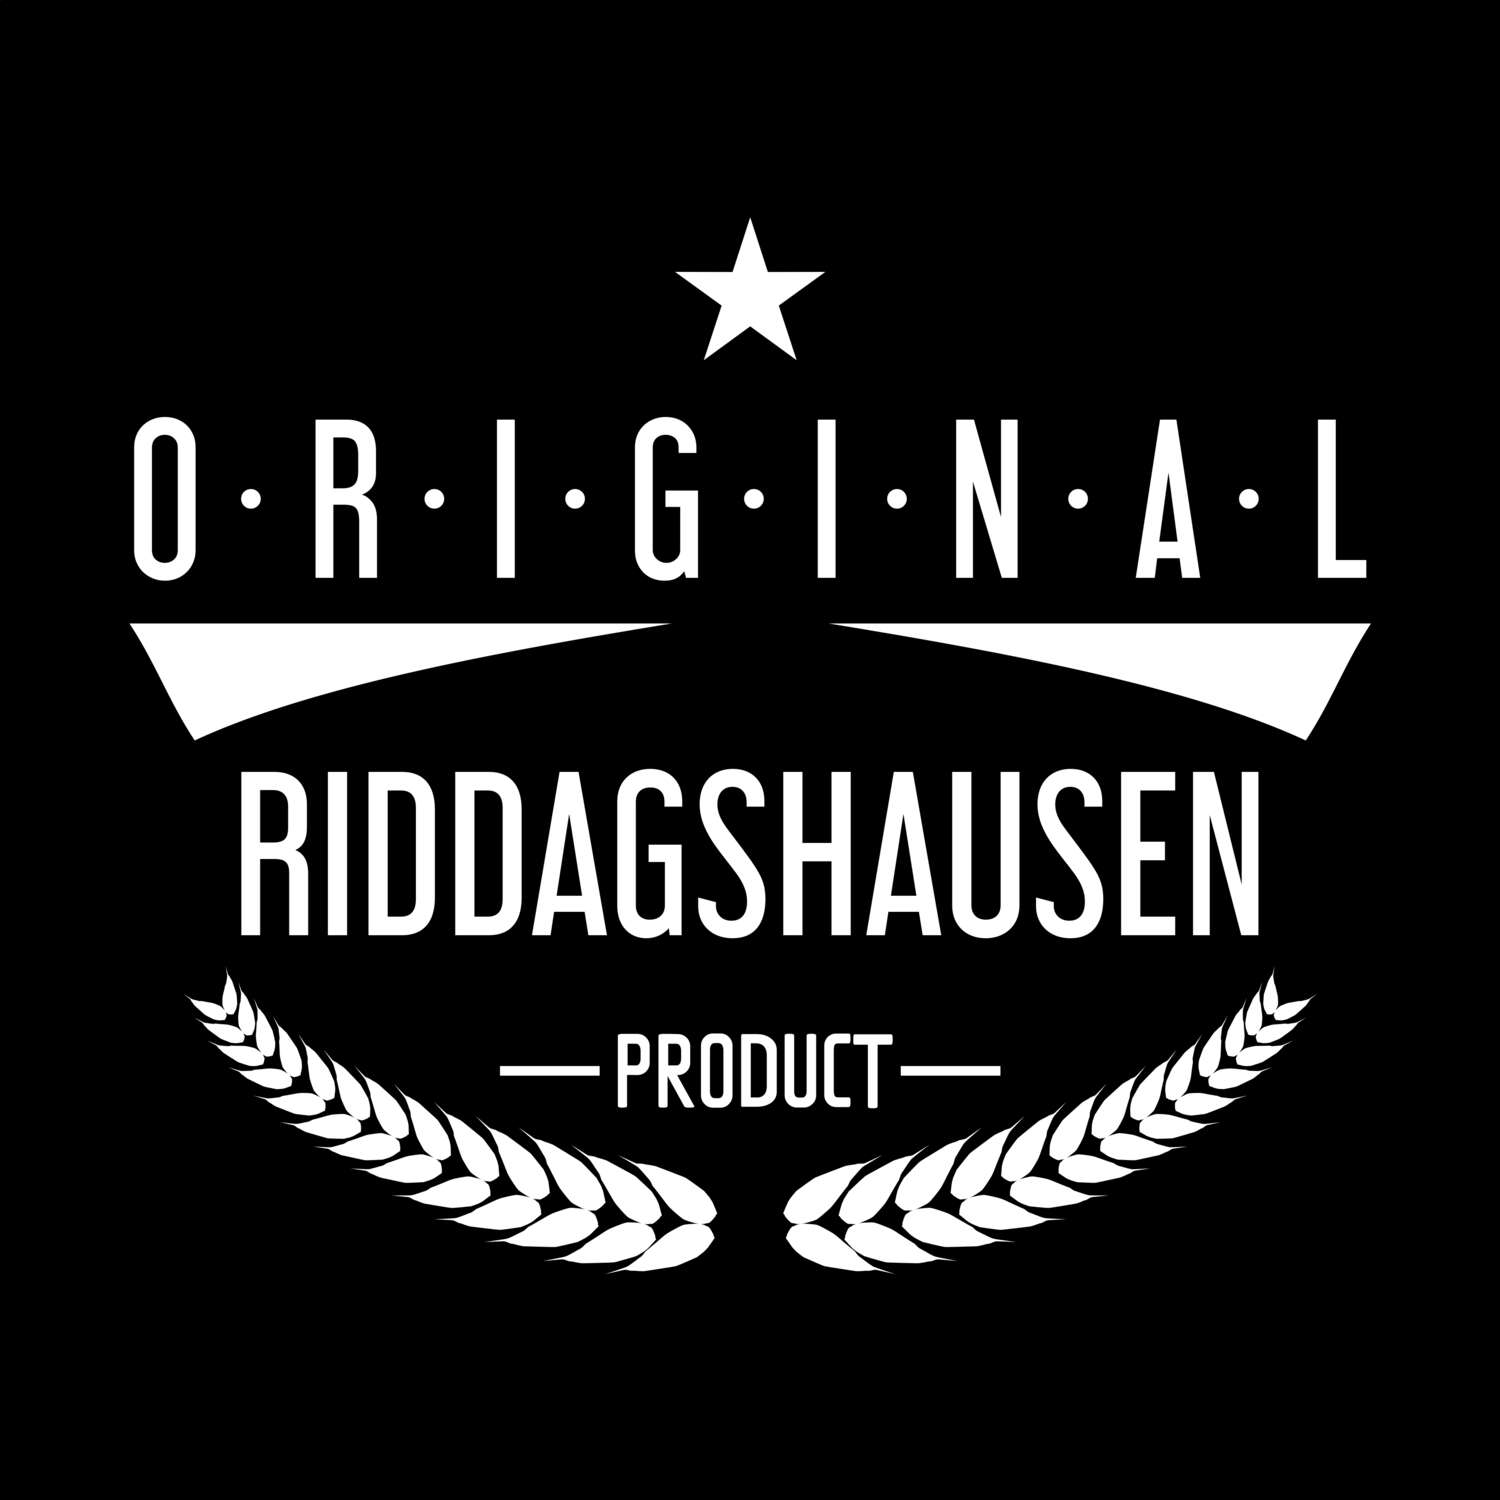 Riddagshausen T-Shirt »Original Product«